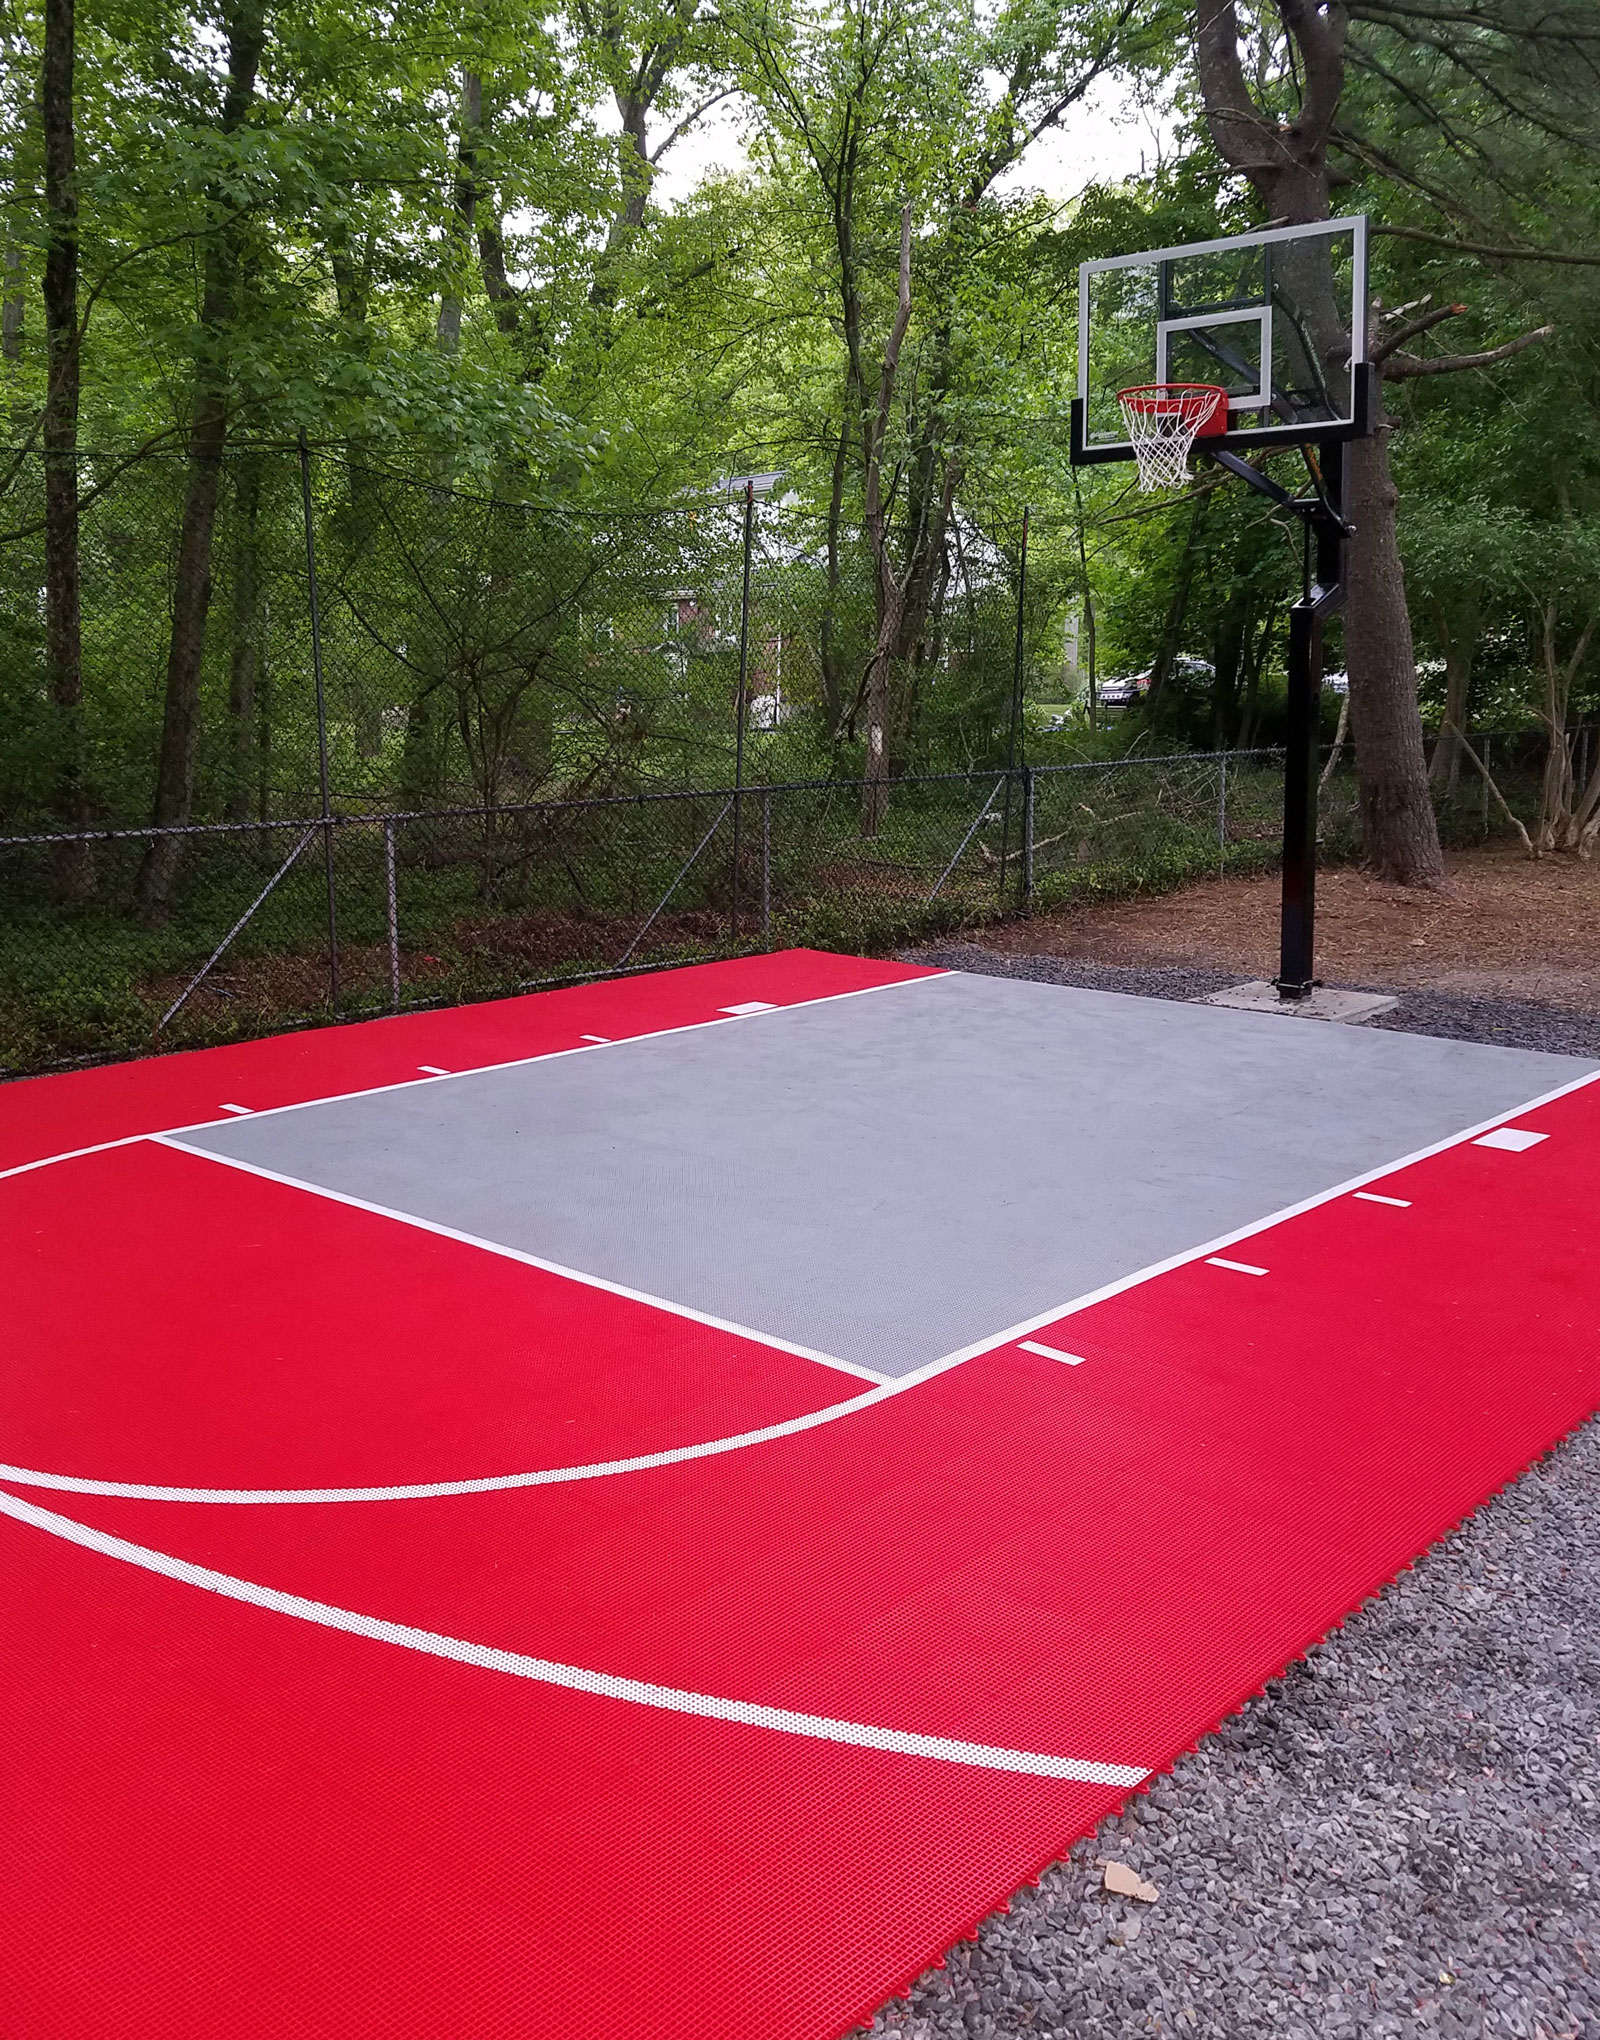 Backyard Basketball Courts Backyard Design Ideas